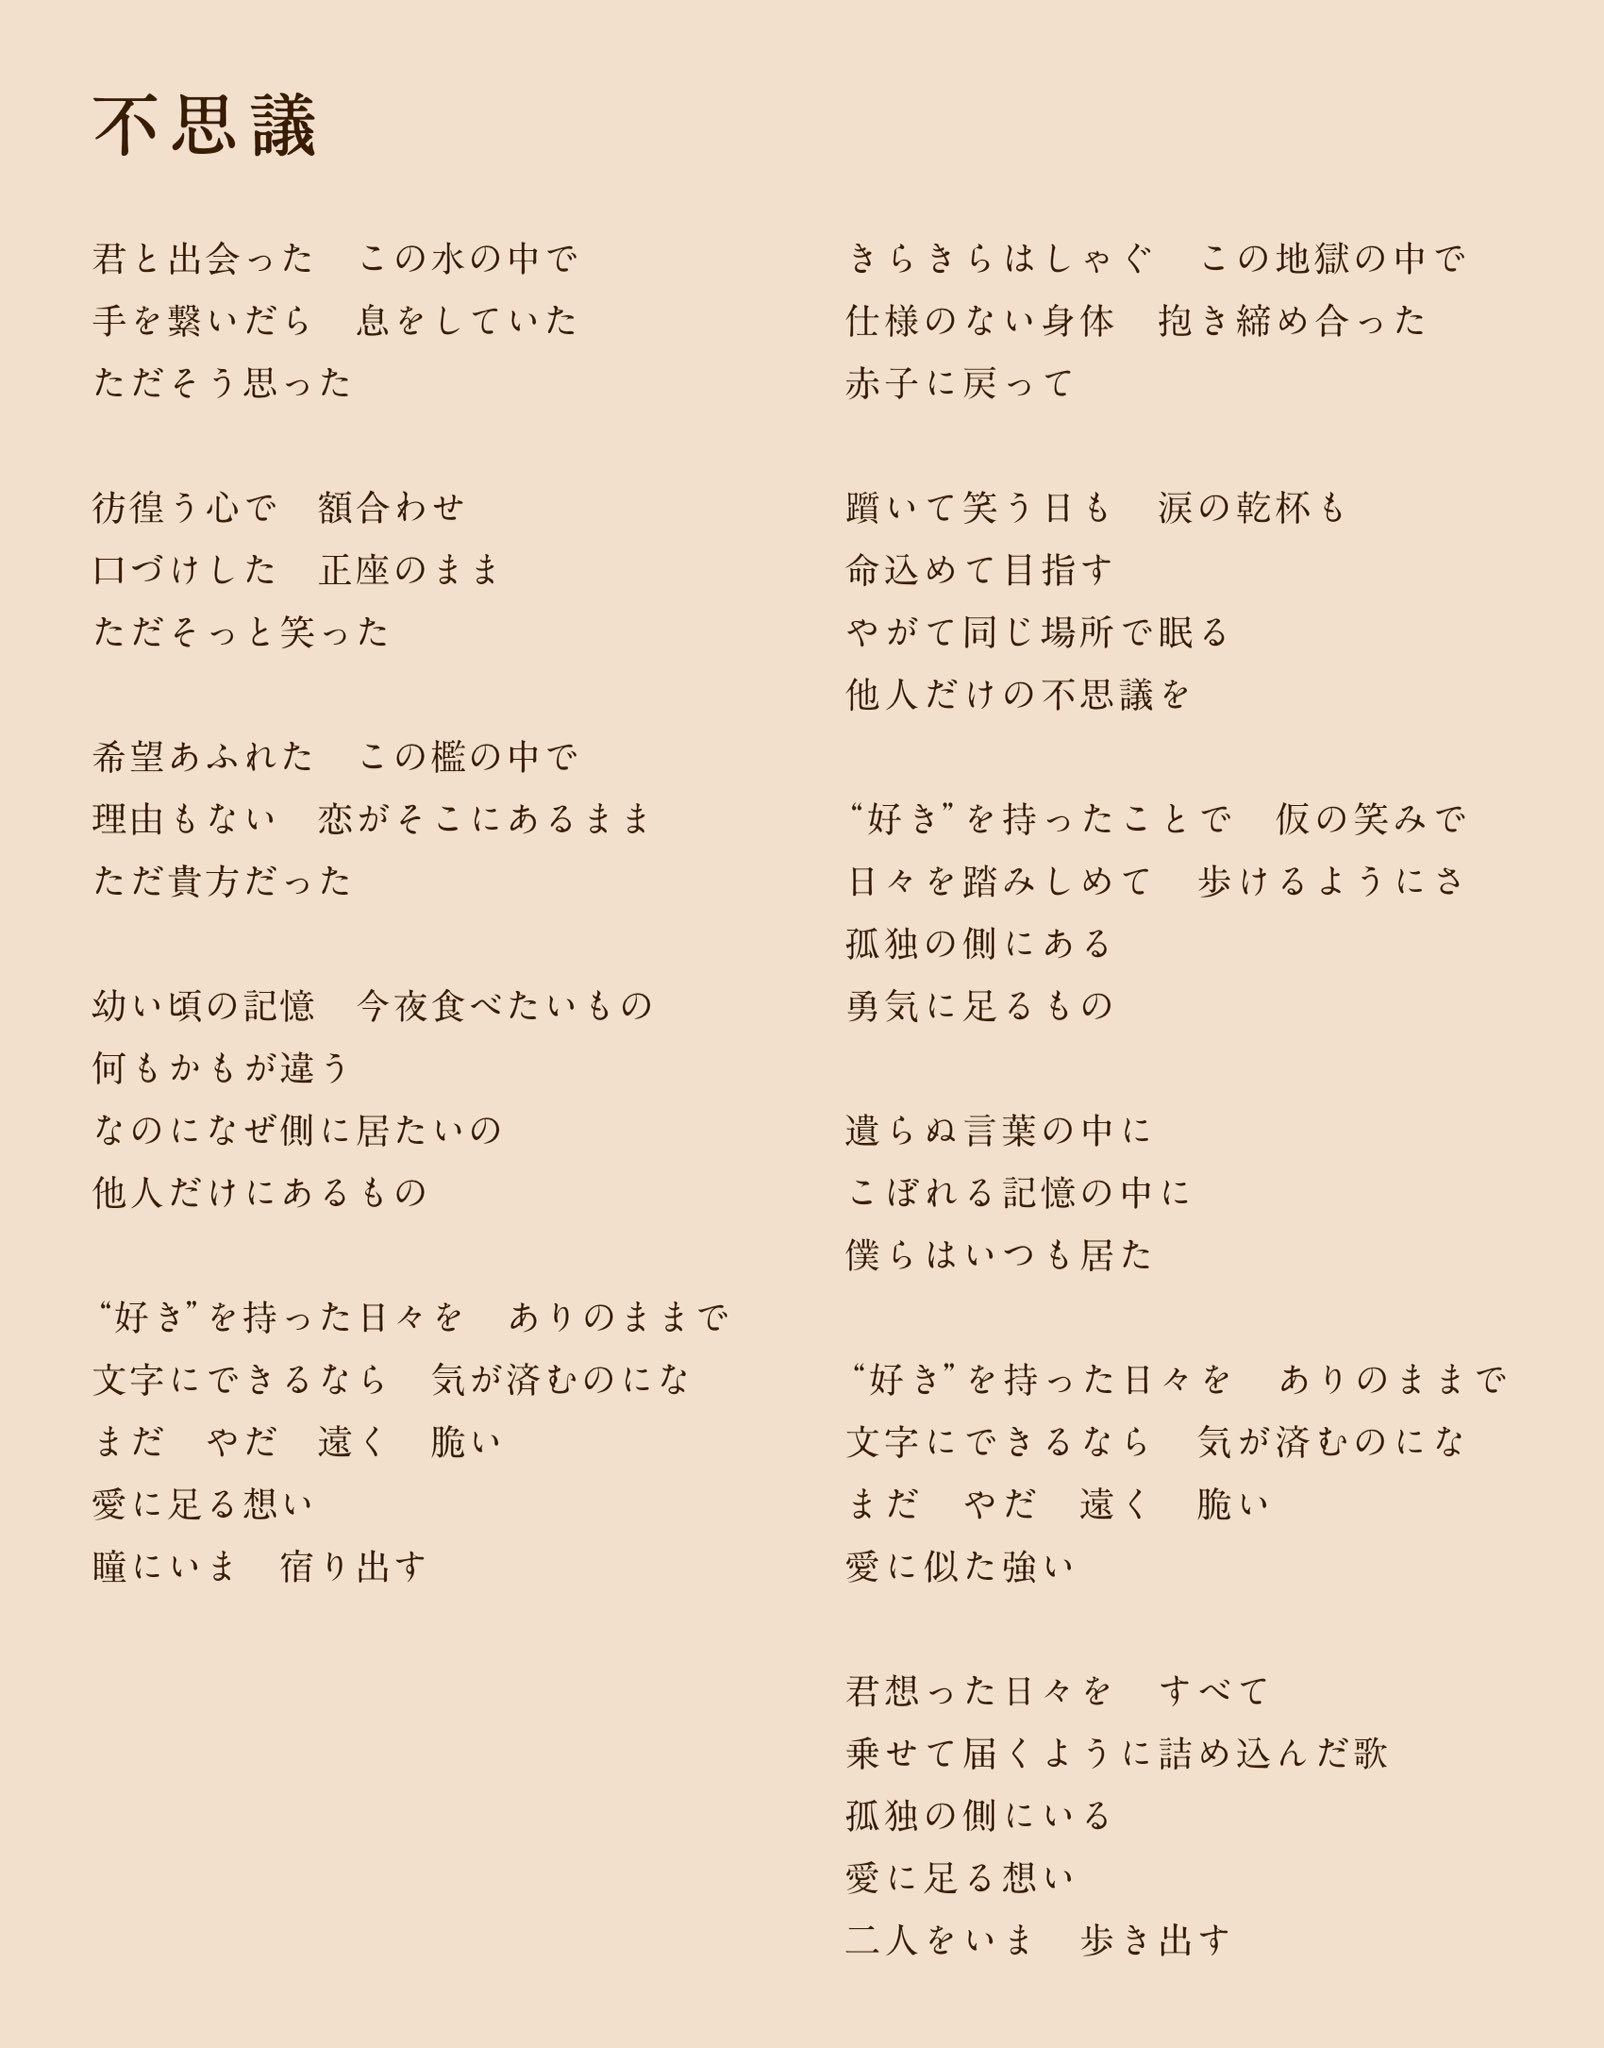 星野源 Gen Hoshino Fushigi Is Out Now Across All Digital Platforms We Also Made English Lyrics For Fushigi So Have Fun Comparing The English And Japanese Lyrics Keep Sending Us